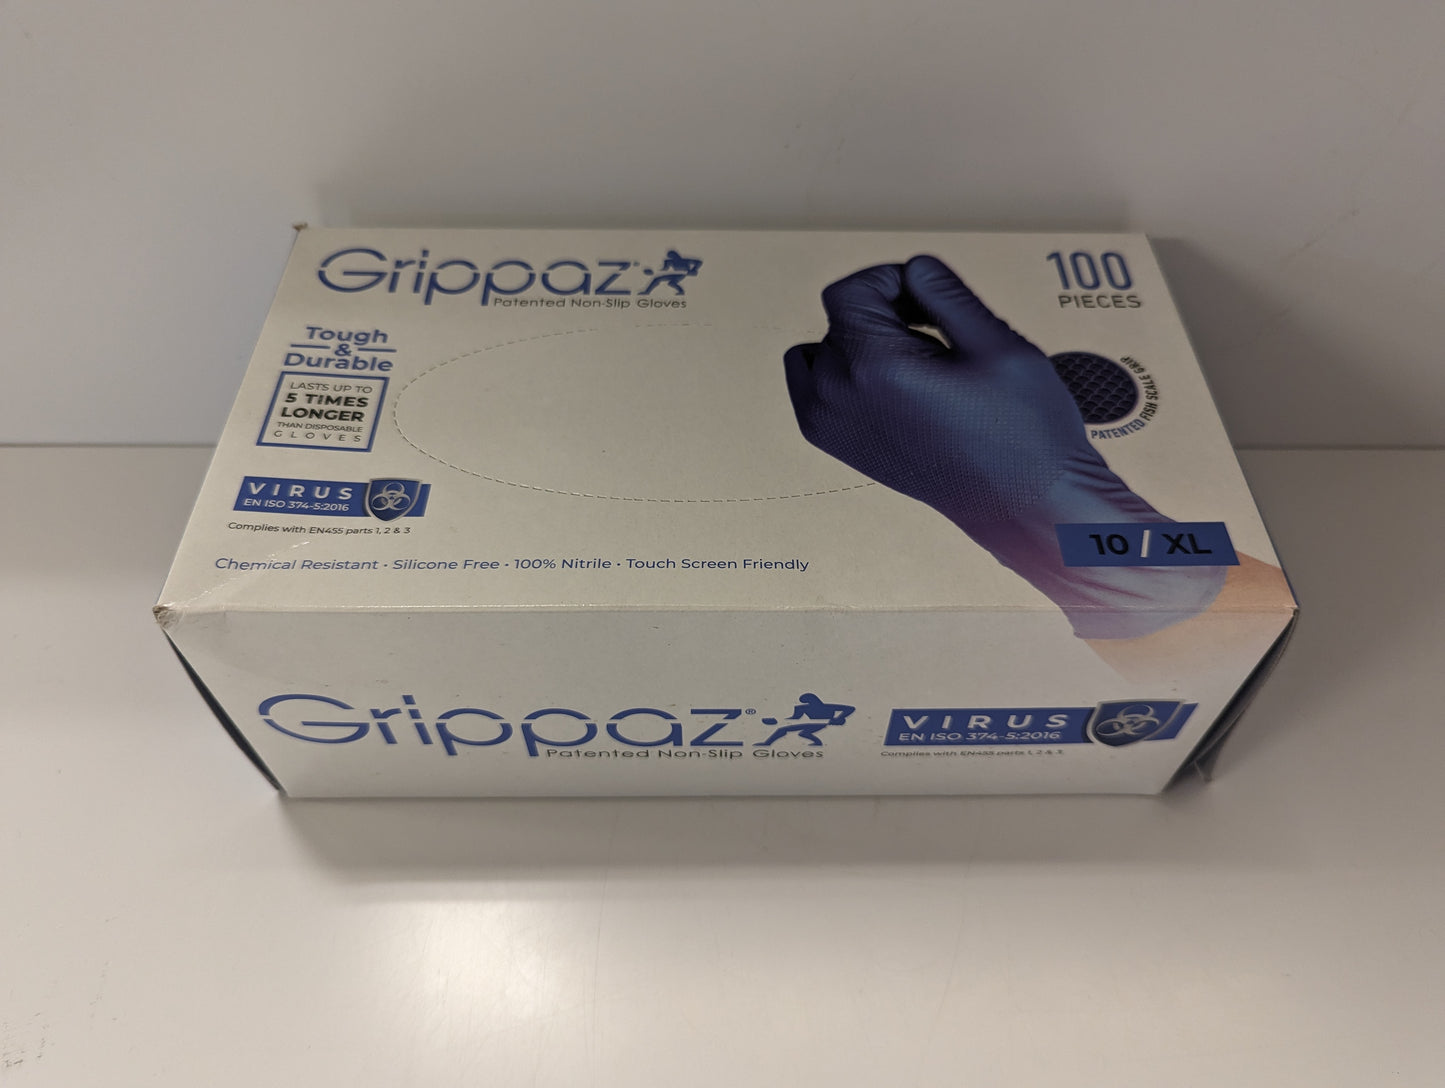 Grippaz Patented non-slip Gloves